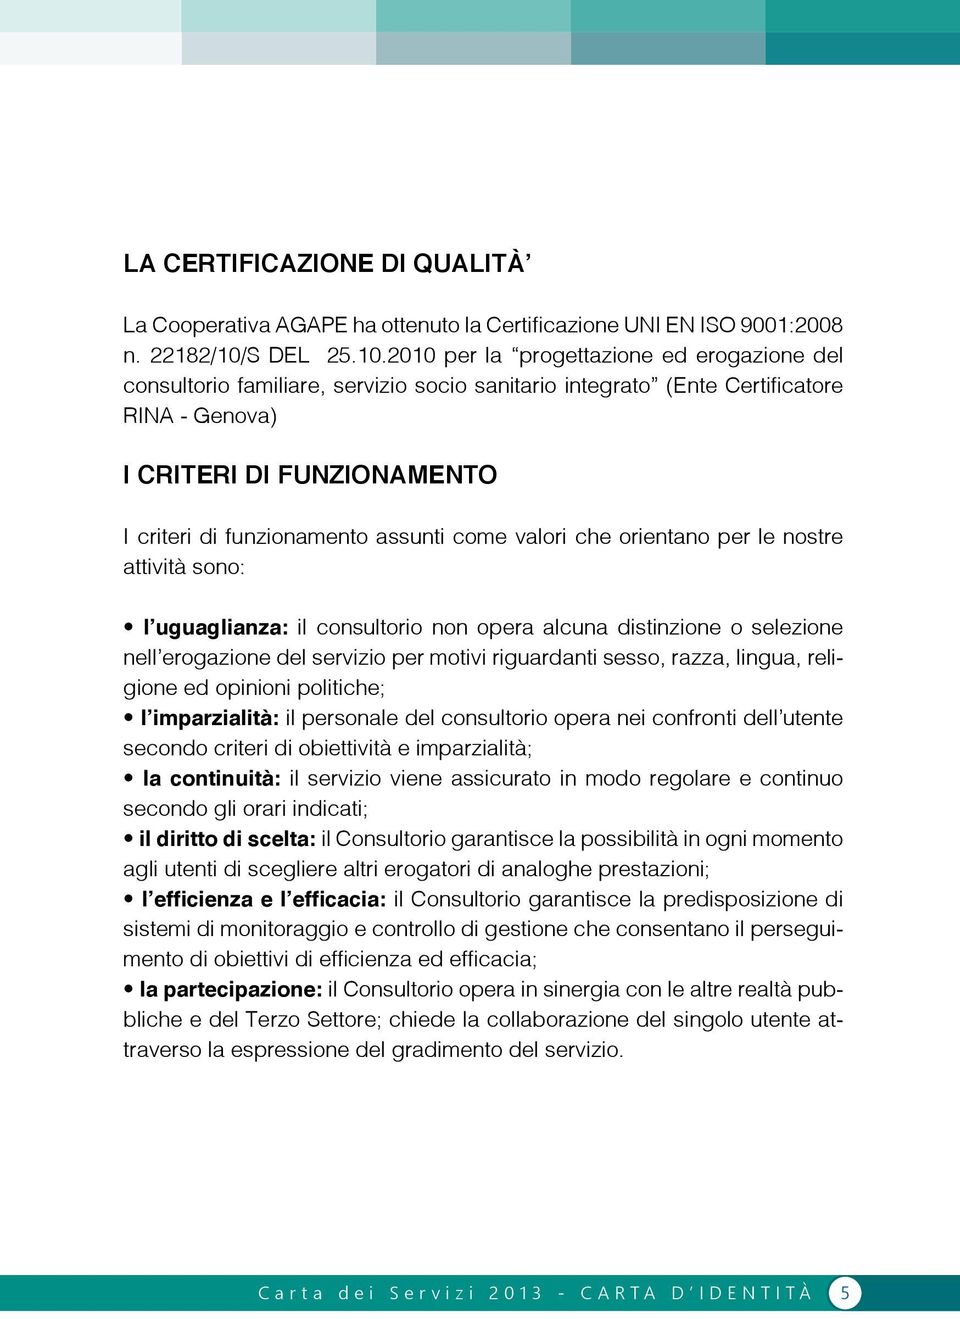 2010 per la progettazione ed erogazione del consultorio familiare, servizio socio sanitario integrato (Ente Certificatore RINA - Genova) I CRITERI DI FUNZIONAMENTO I criteri di funzionamento assunti